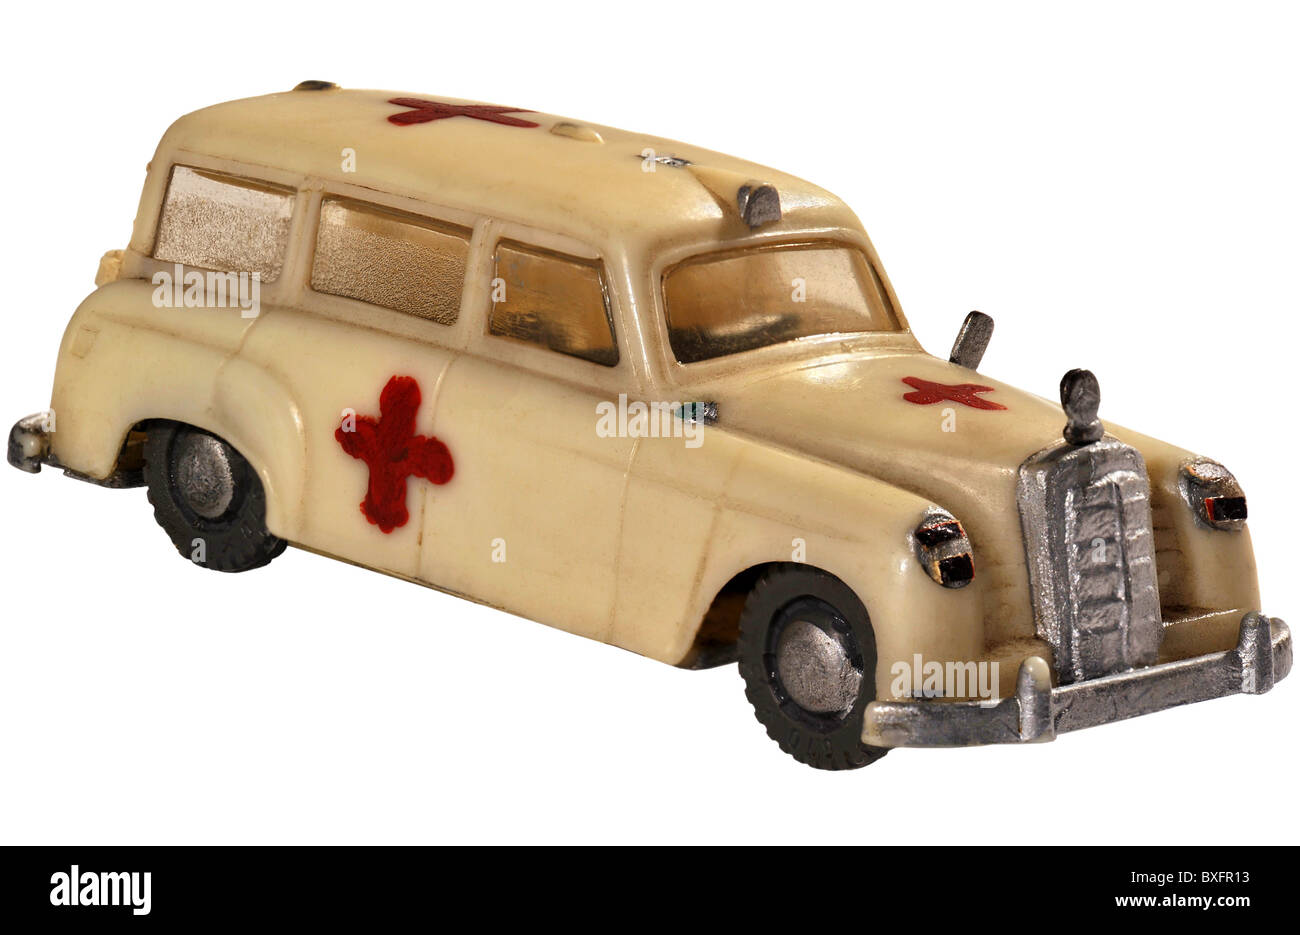 MERCEDES 180 ambulanza autoambulanza Croce Rossa 1:43 Atlas modello di auto 